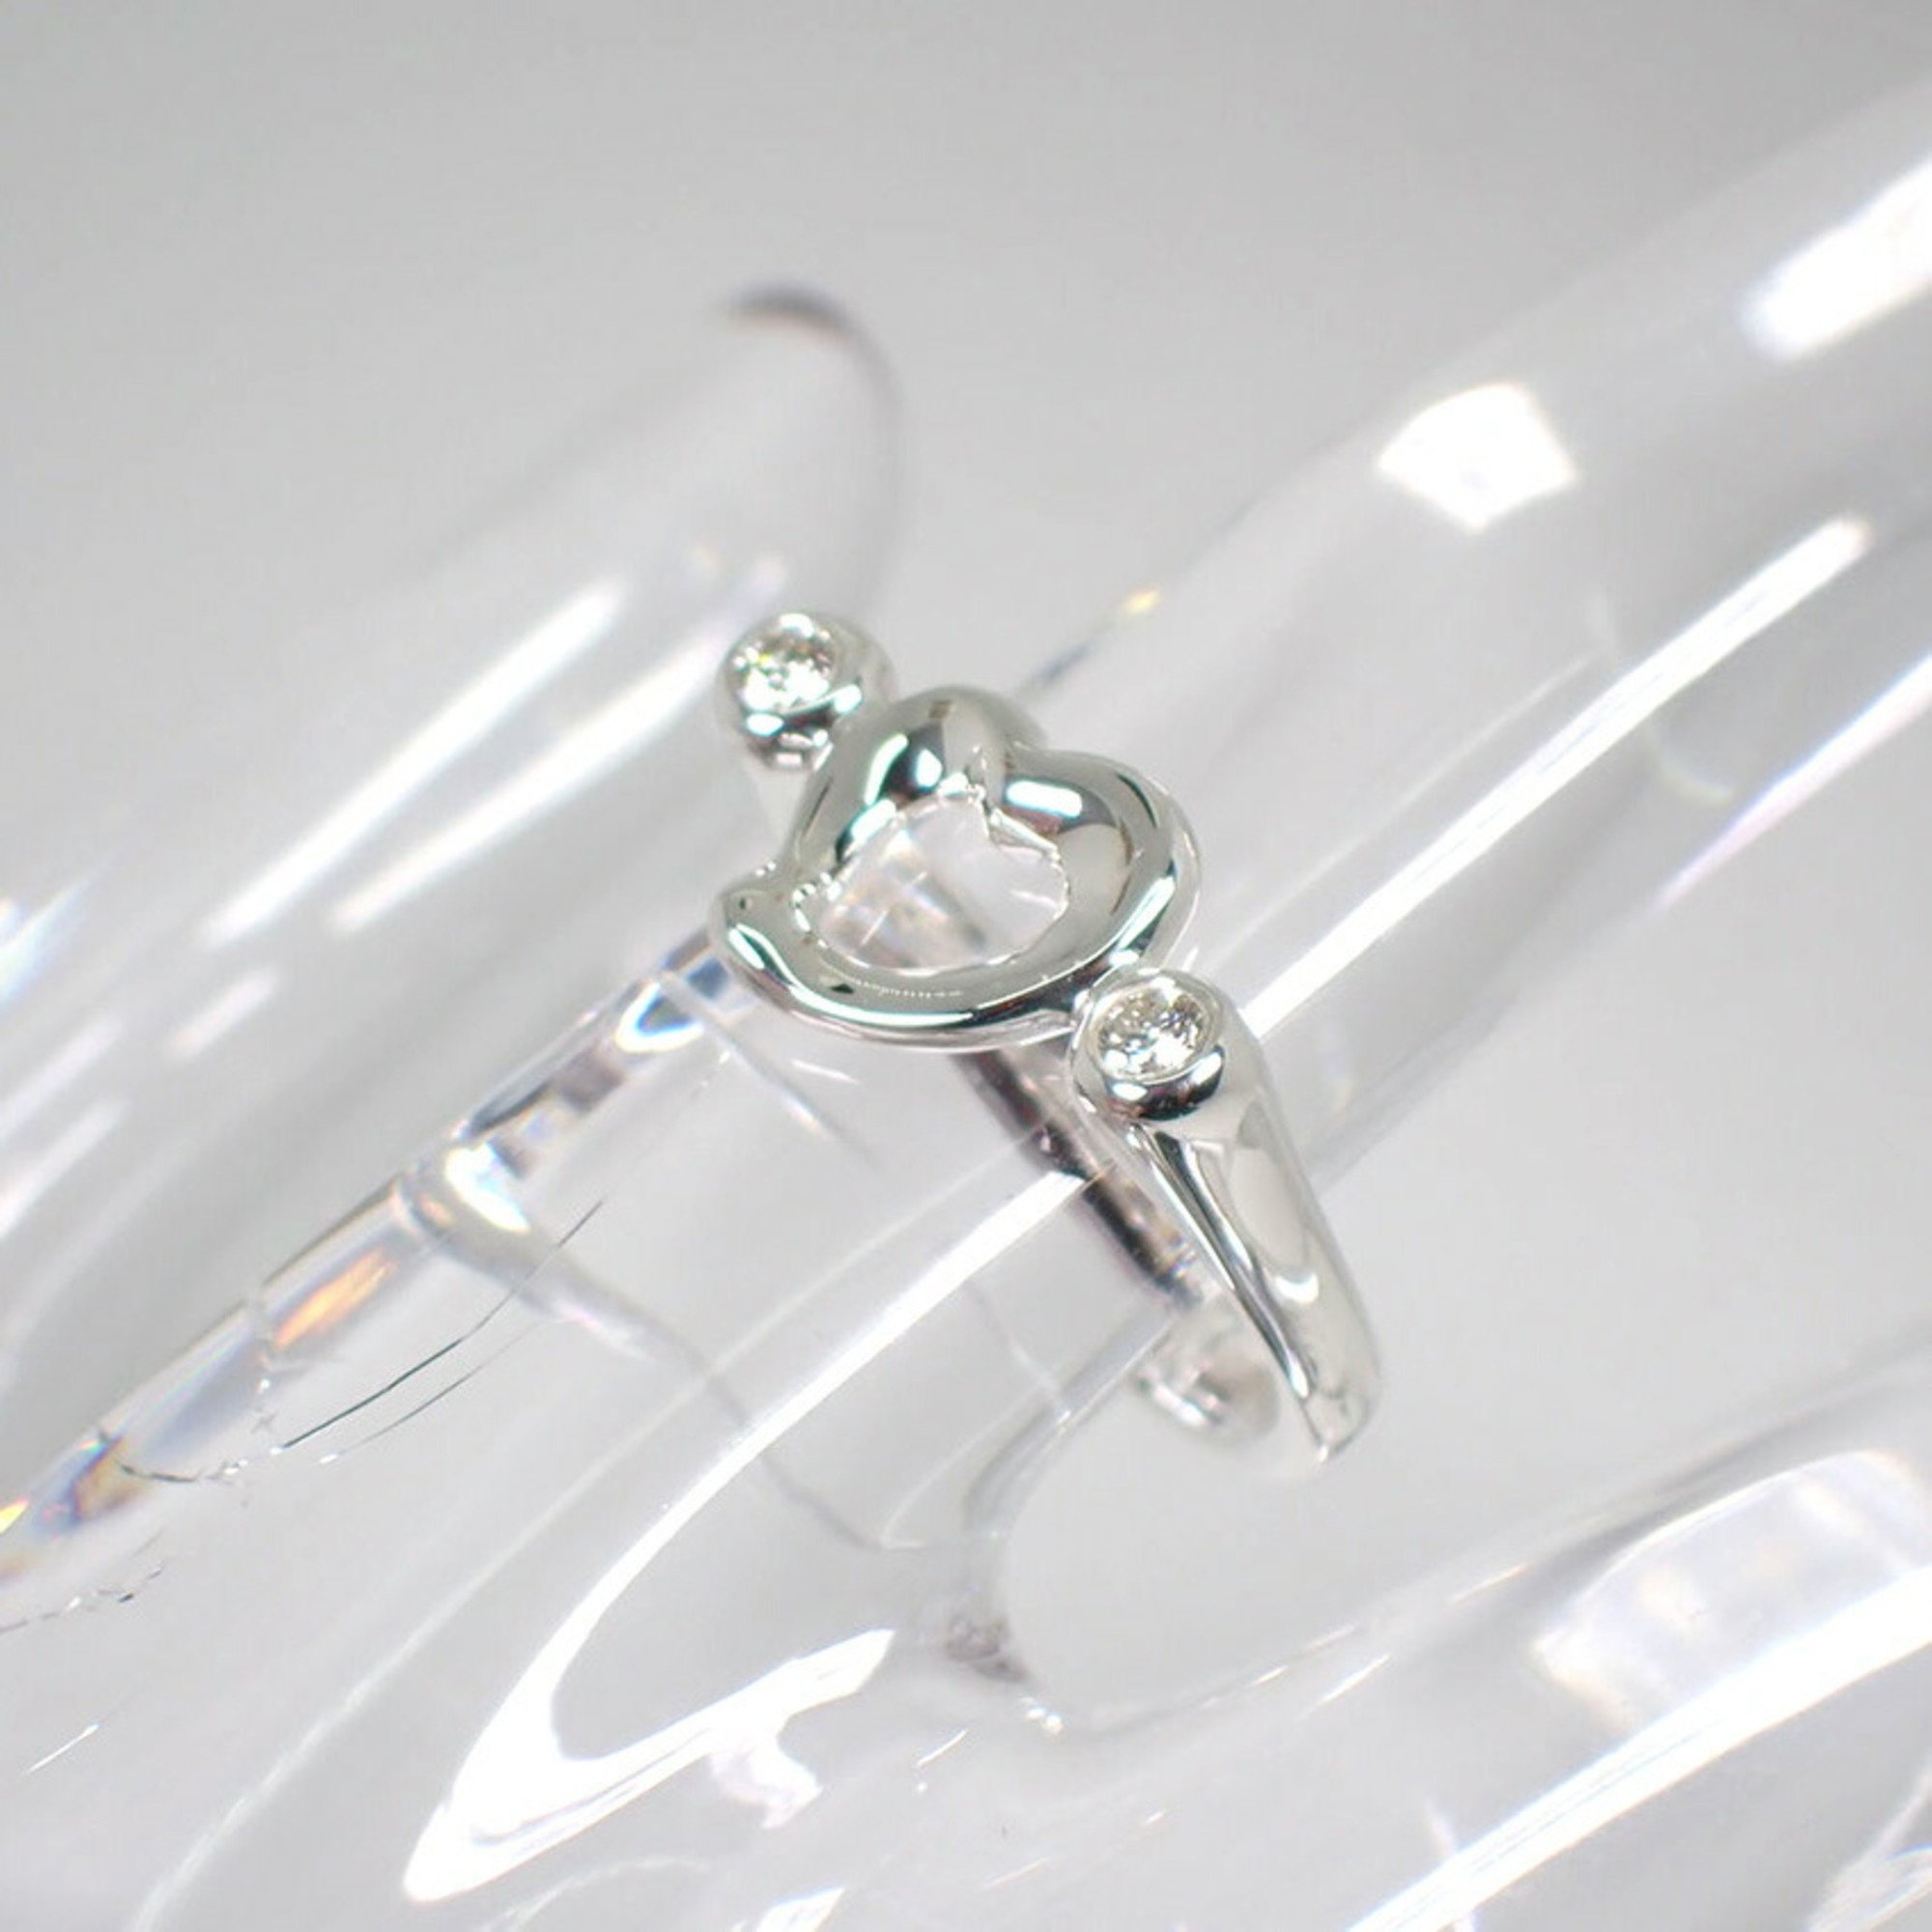 TIFFANY 925 diamond heart ring size 6.5